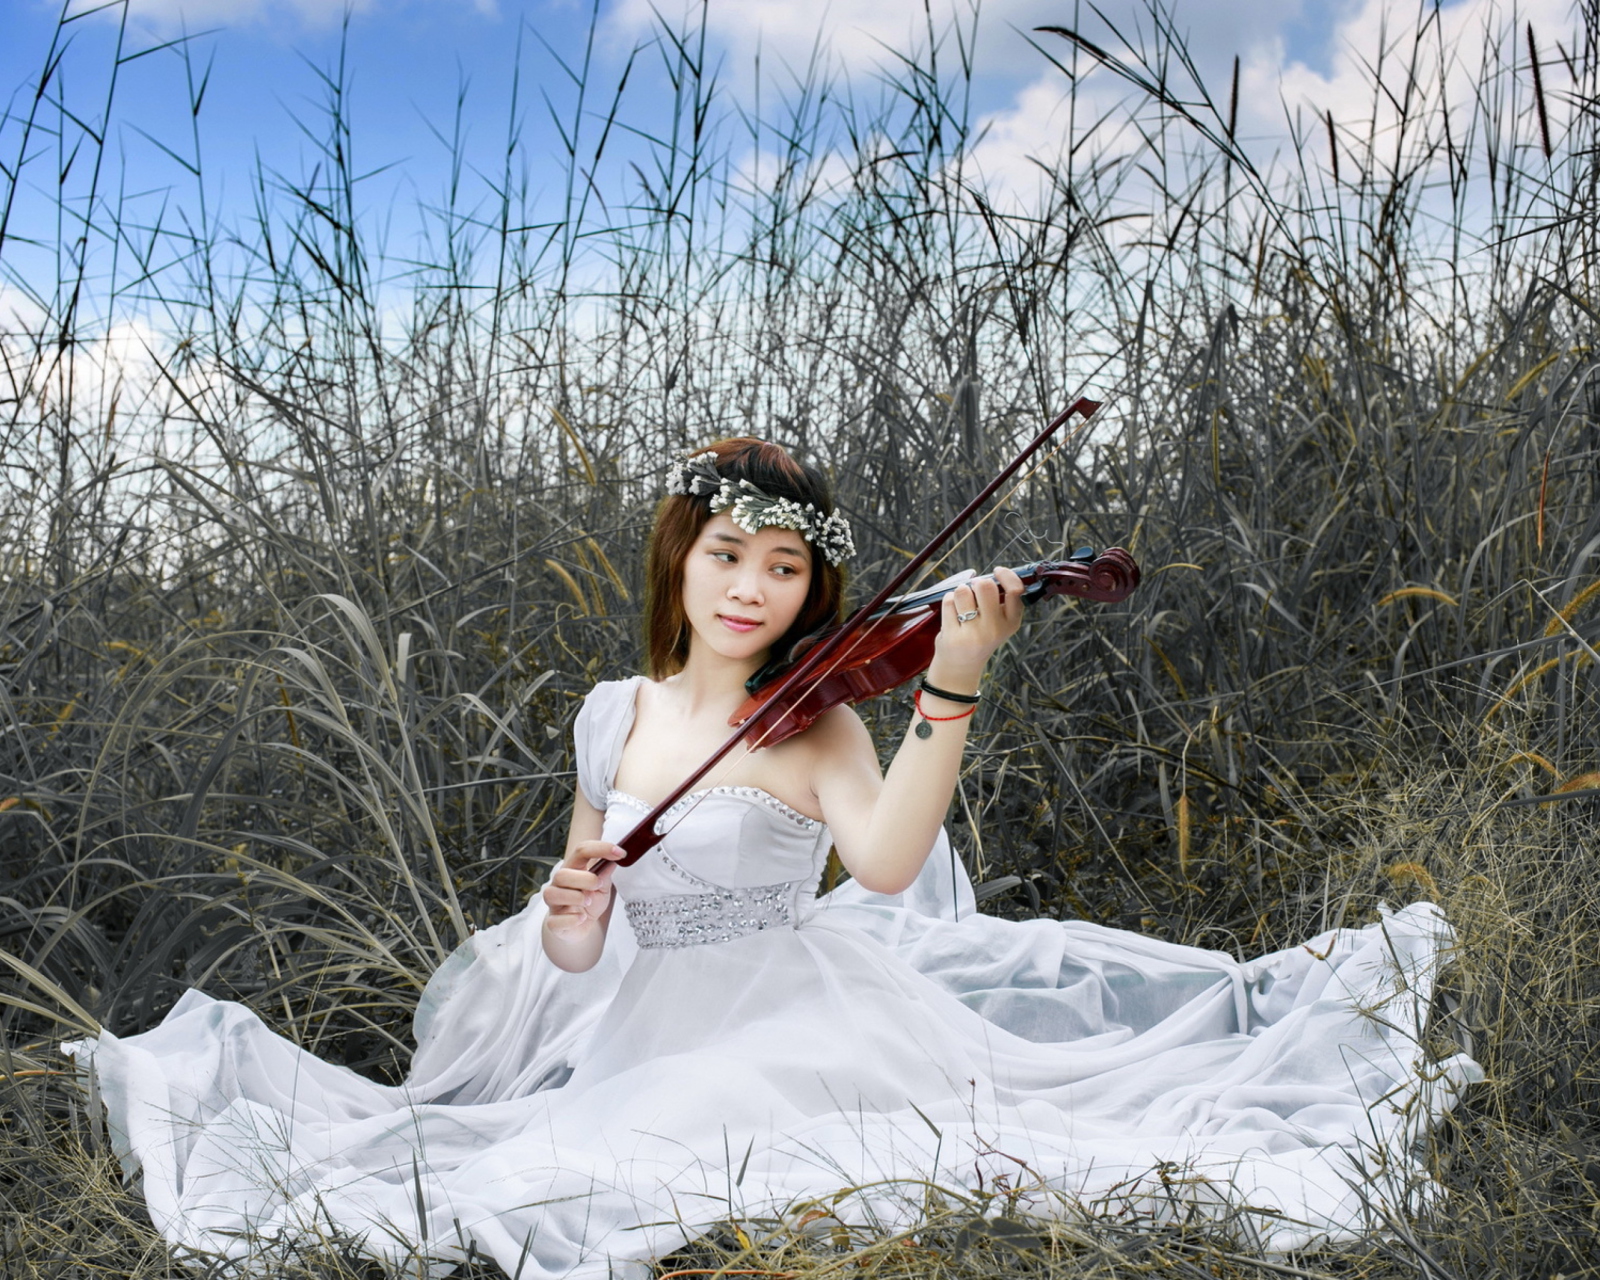 Sfondi Asian Girl Playing Violin 1600x1280